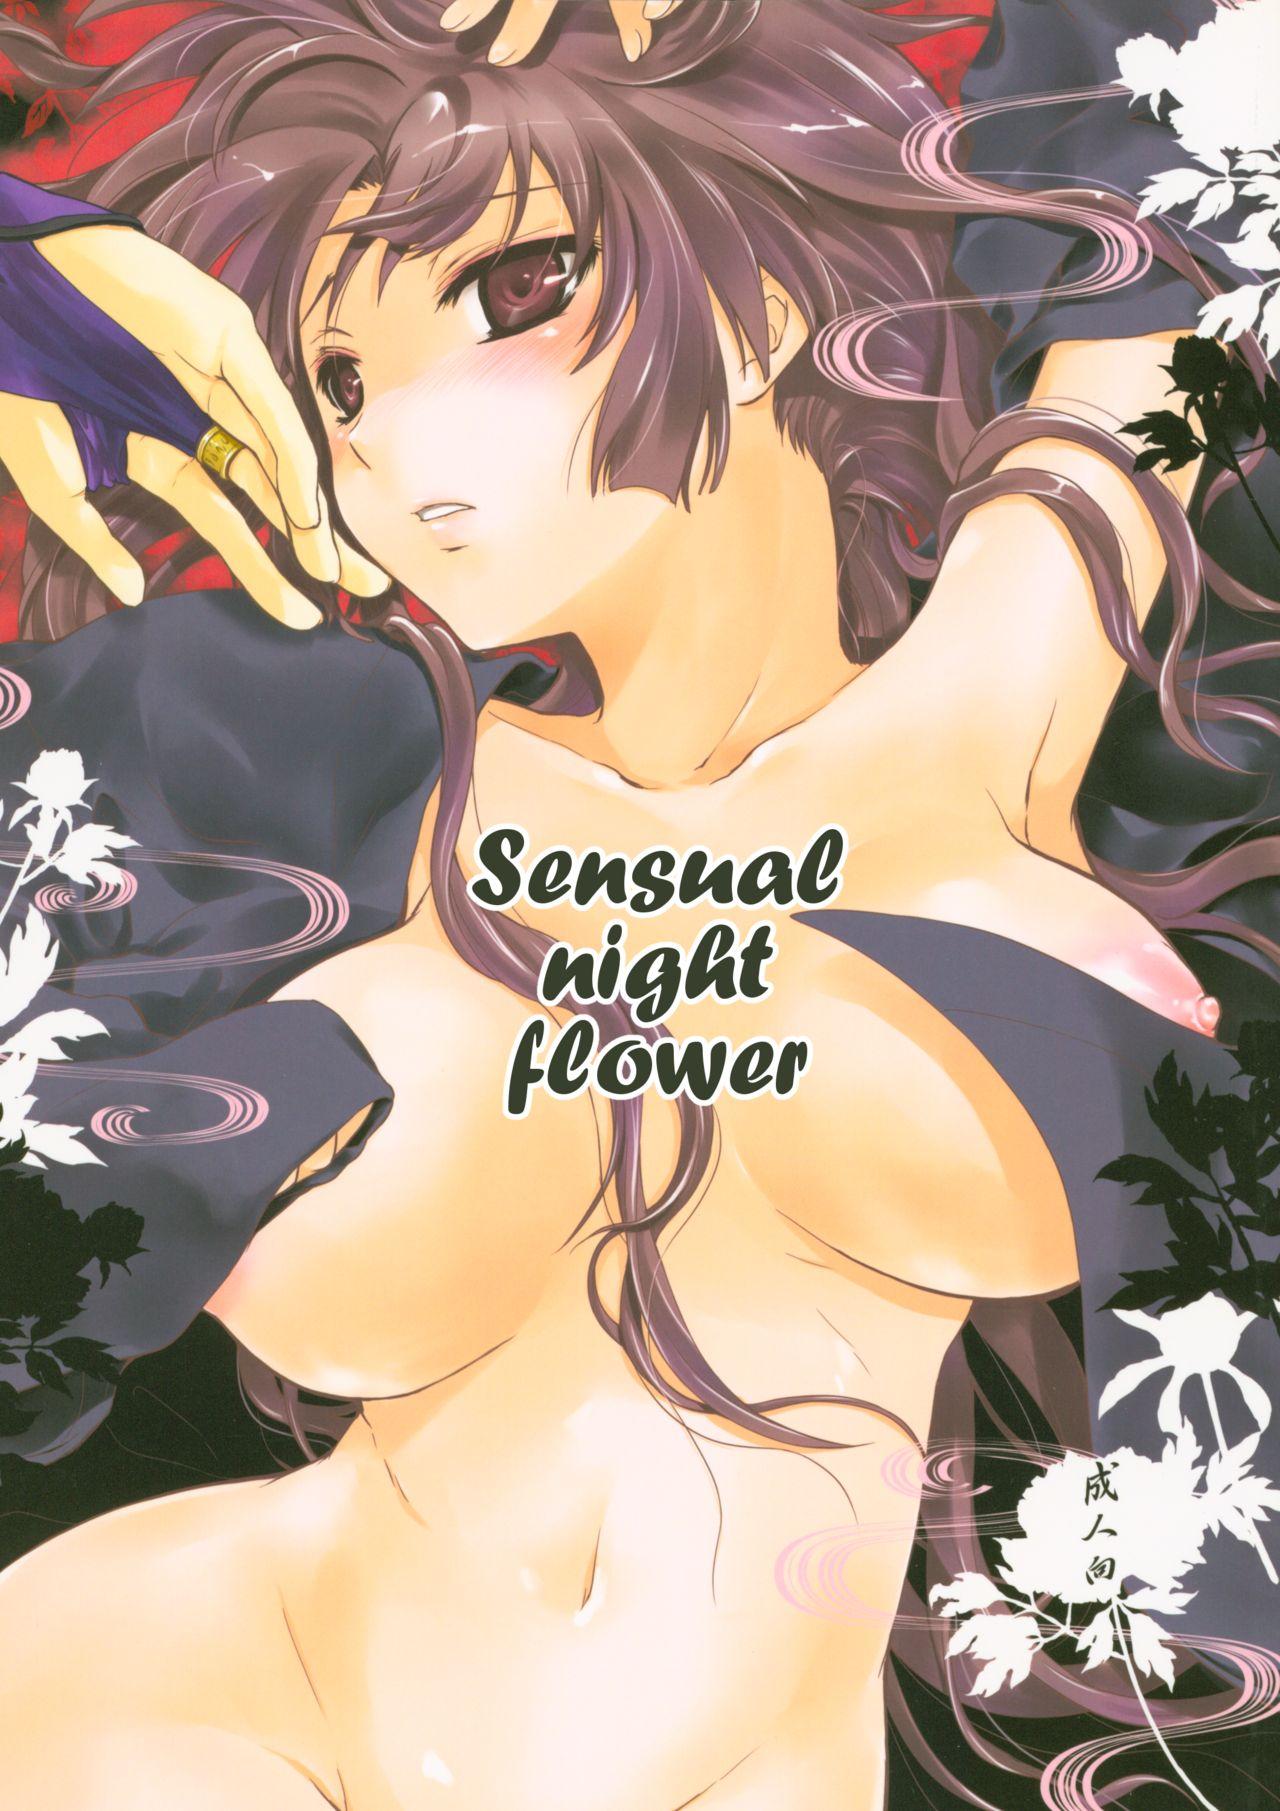 Iromatsuyoibana | Sensual night flower 0